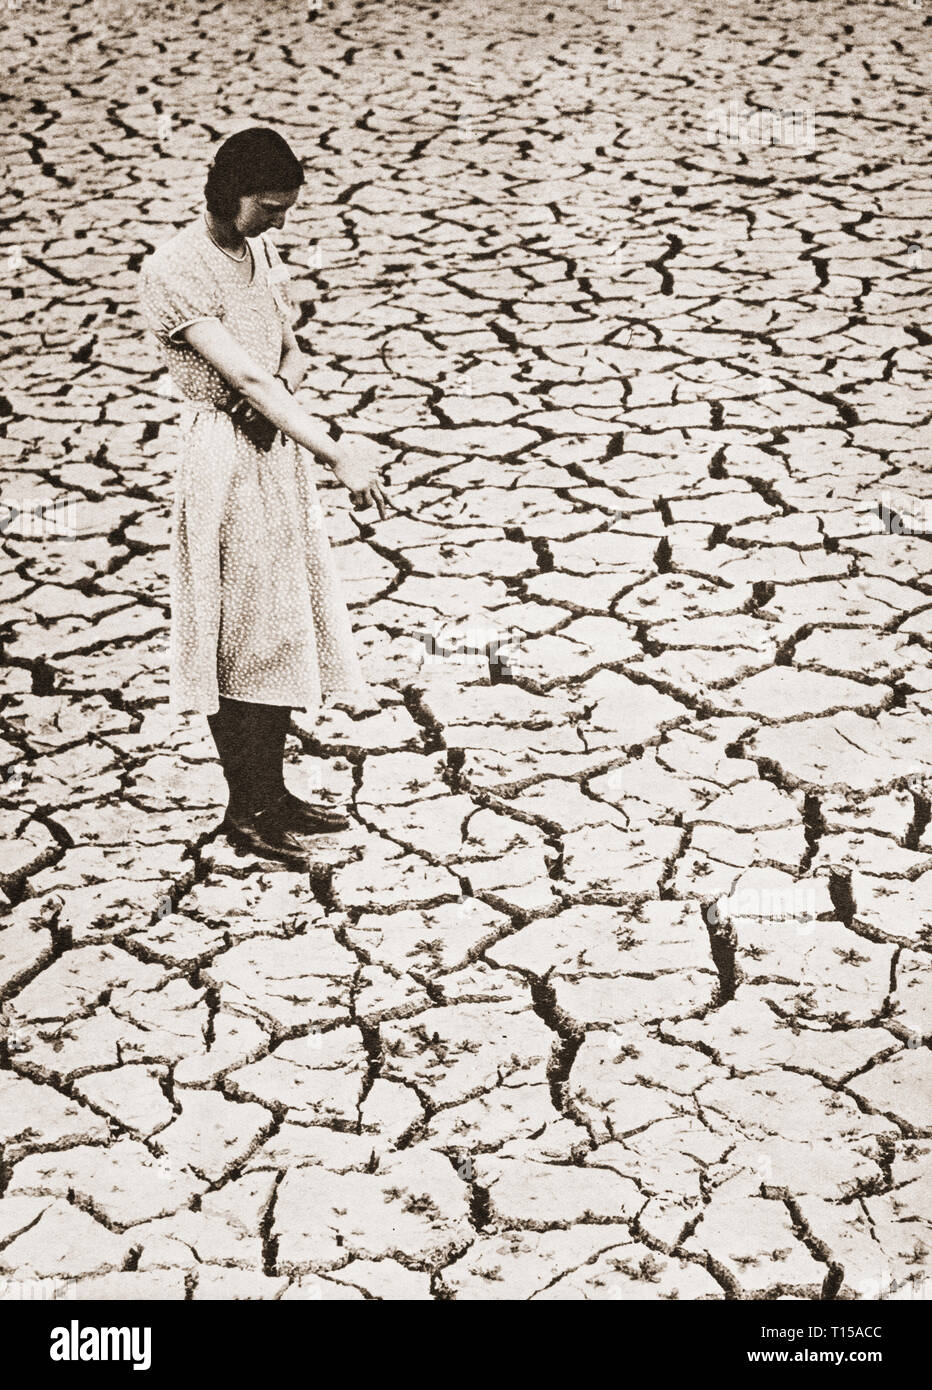 Tras un verano seco en 1933, el corazón ola de junio y julio, el siguiente año se tradujo en una escasez de agua como pantanos secos, al igual que en Tring, Hertfordshire, Inglaterra. Foto de stock